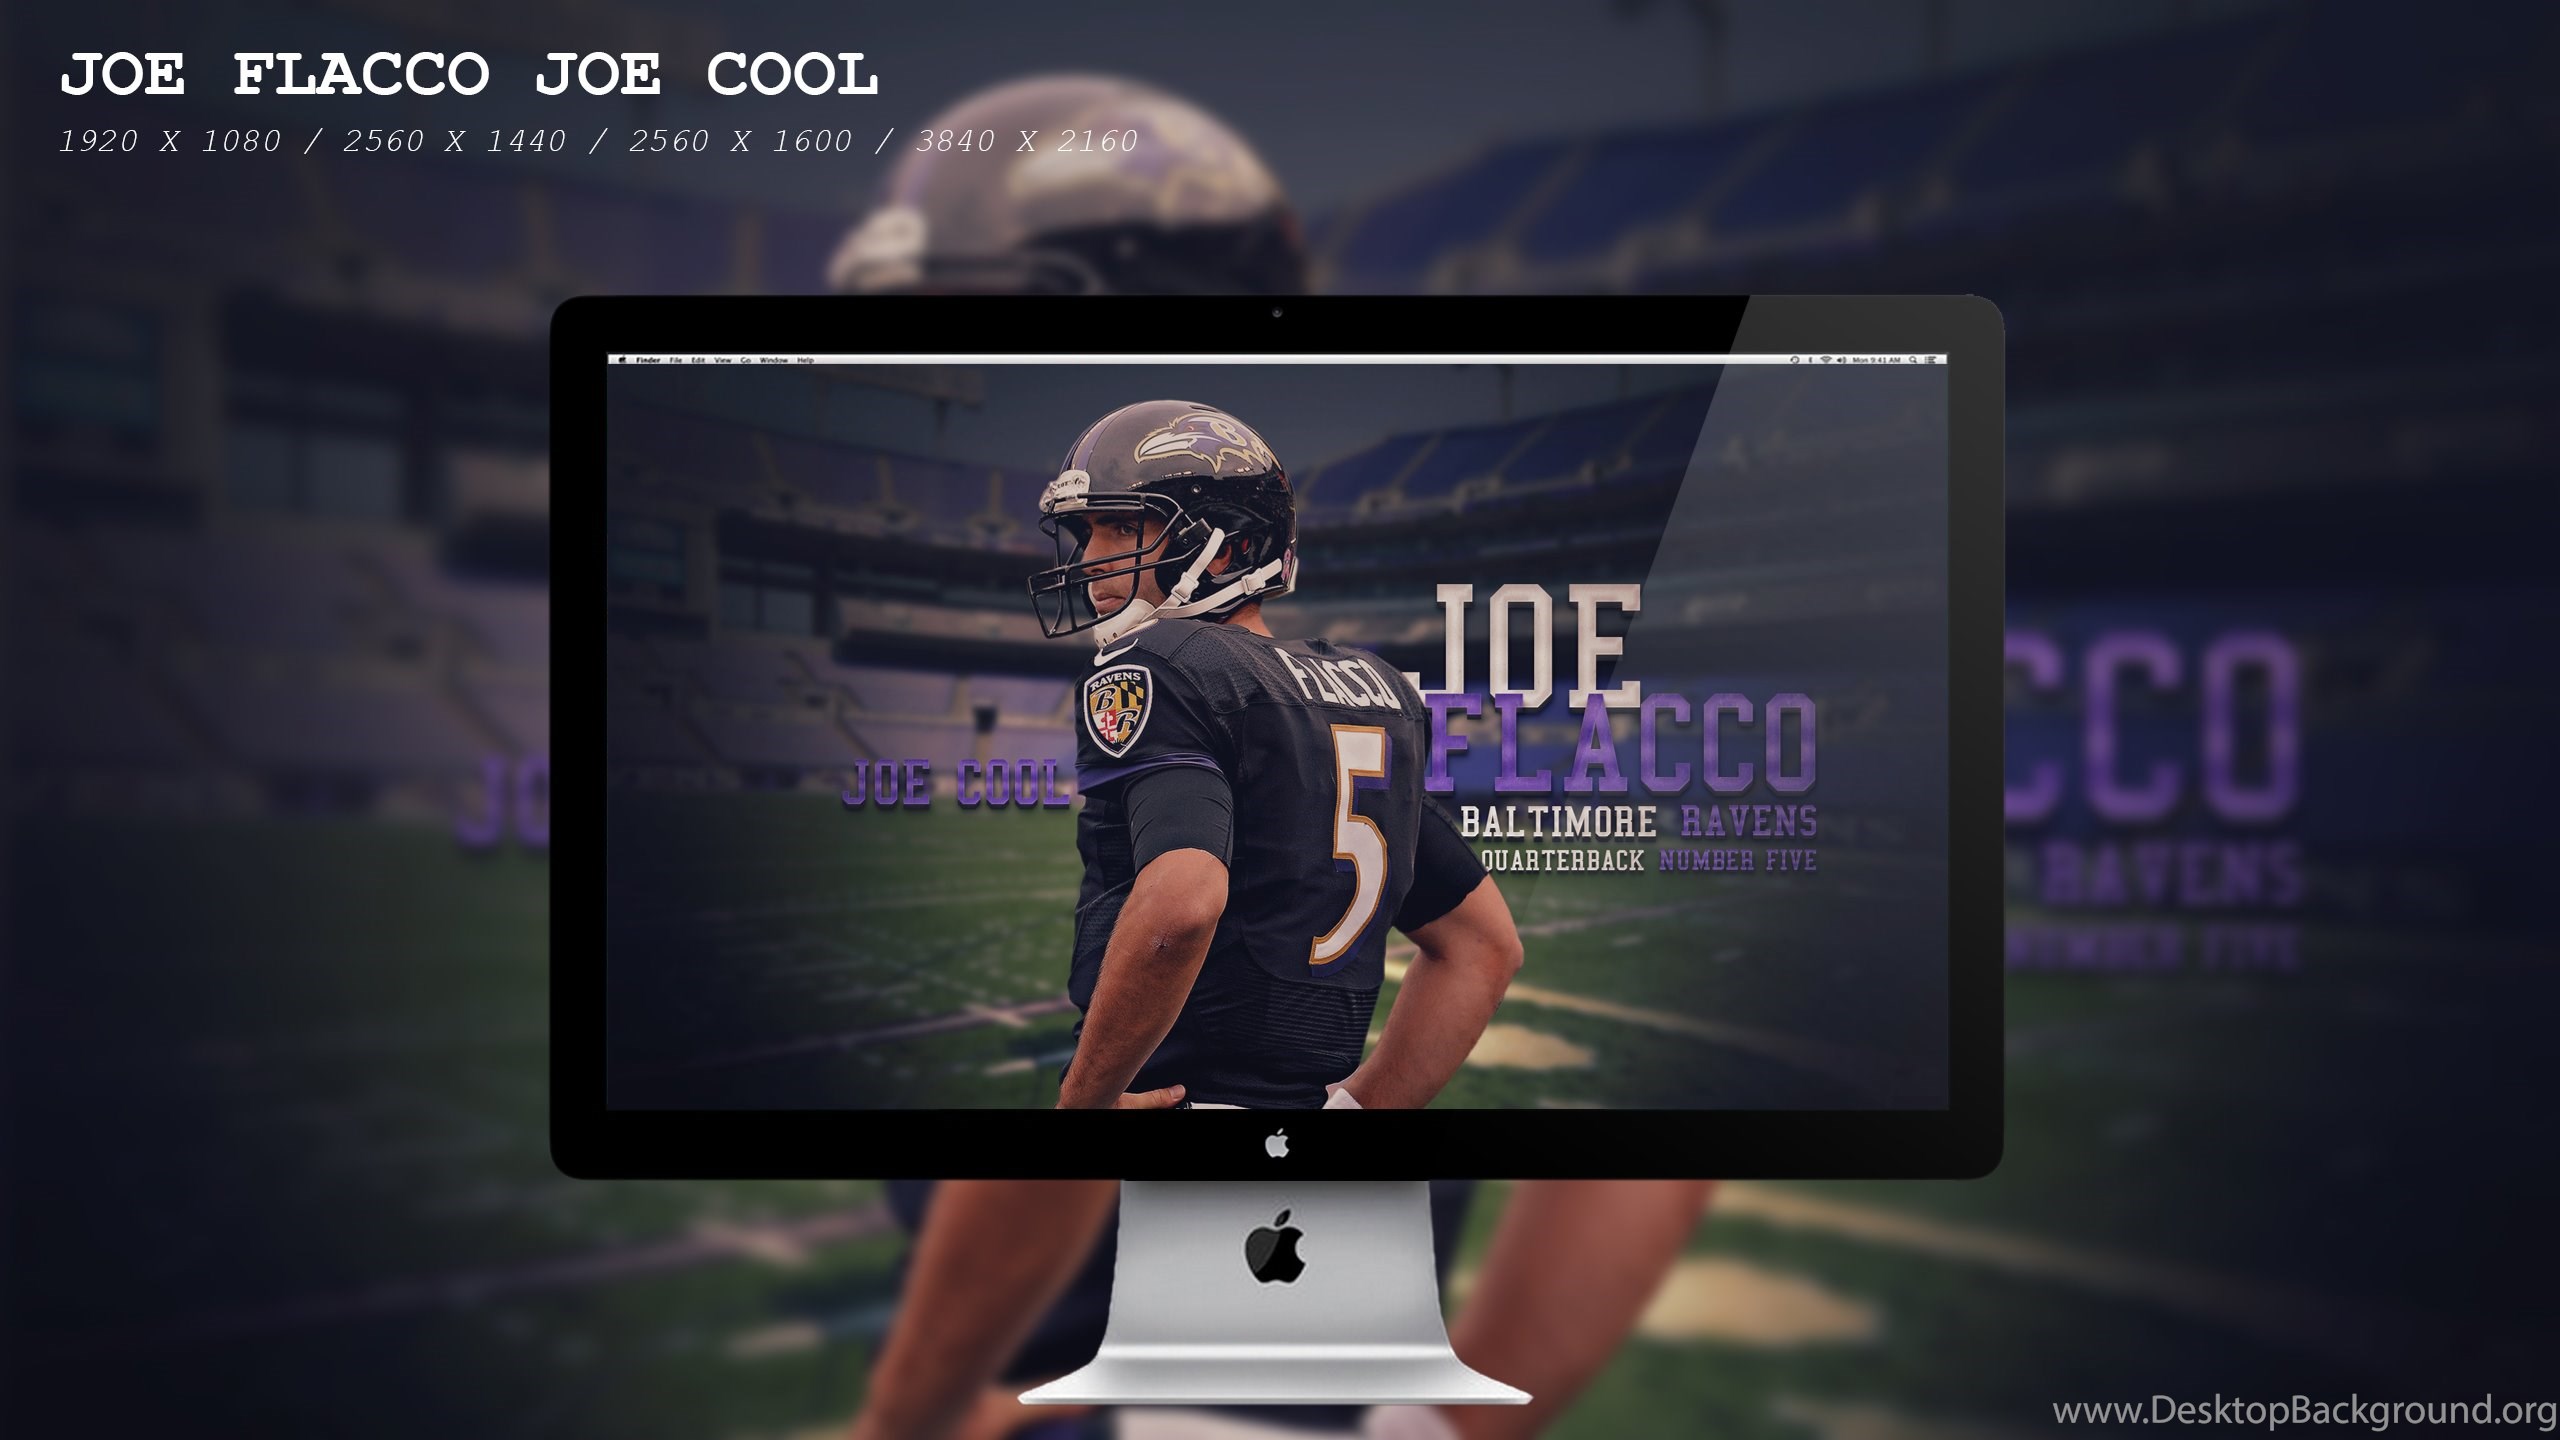 Joe Flacco Joe Cool Wallpapers Hd By Beaware8 On Deviantart Desktop Background